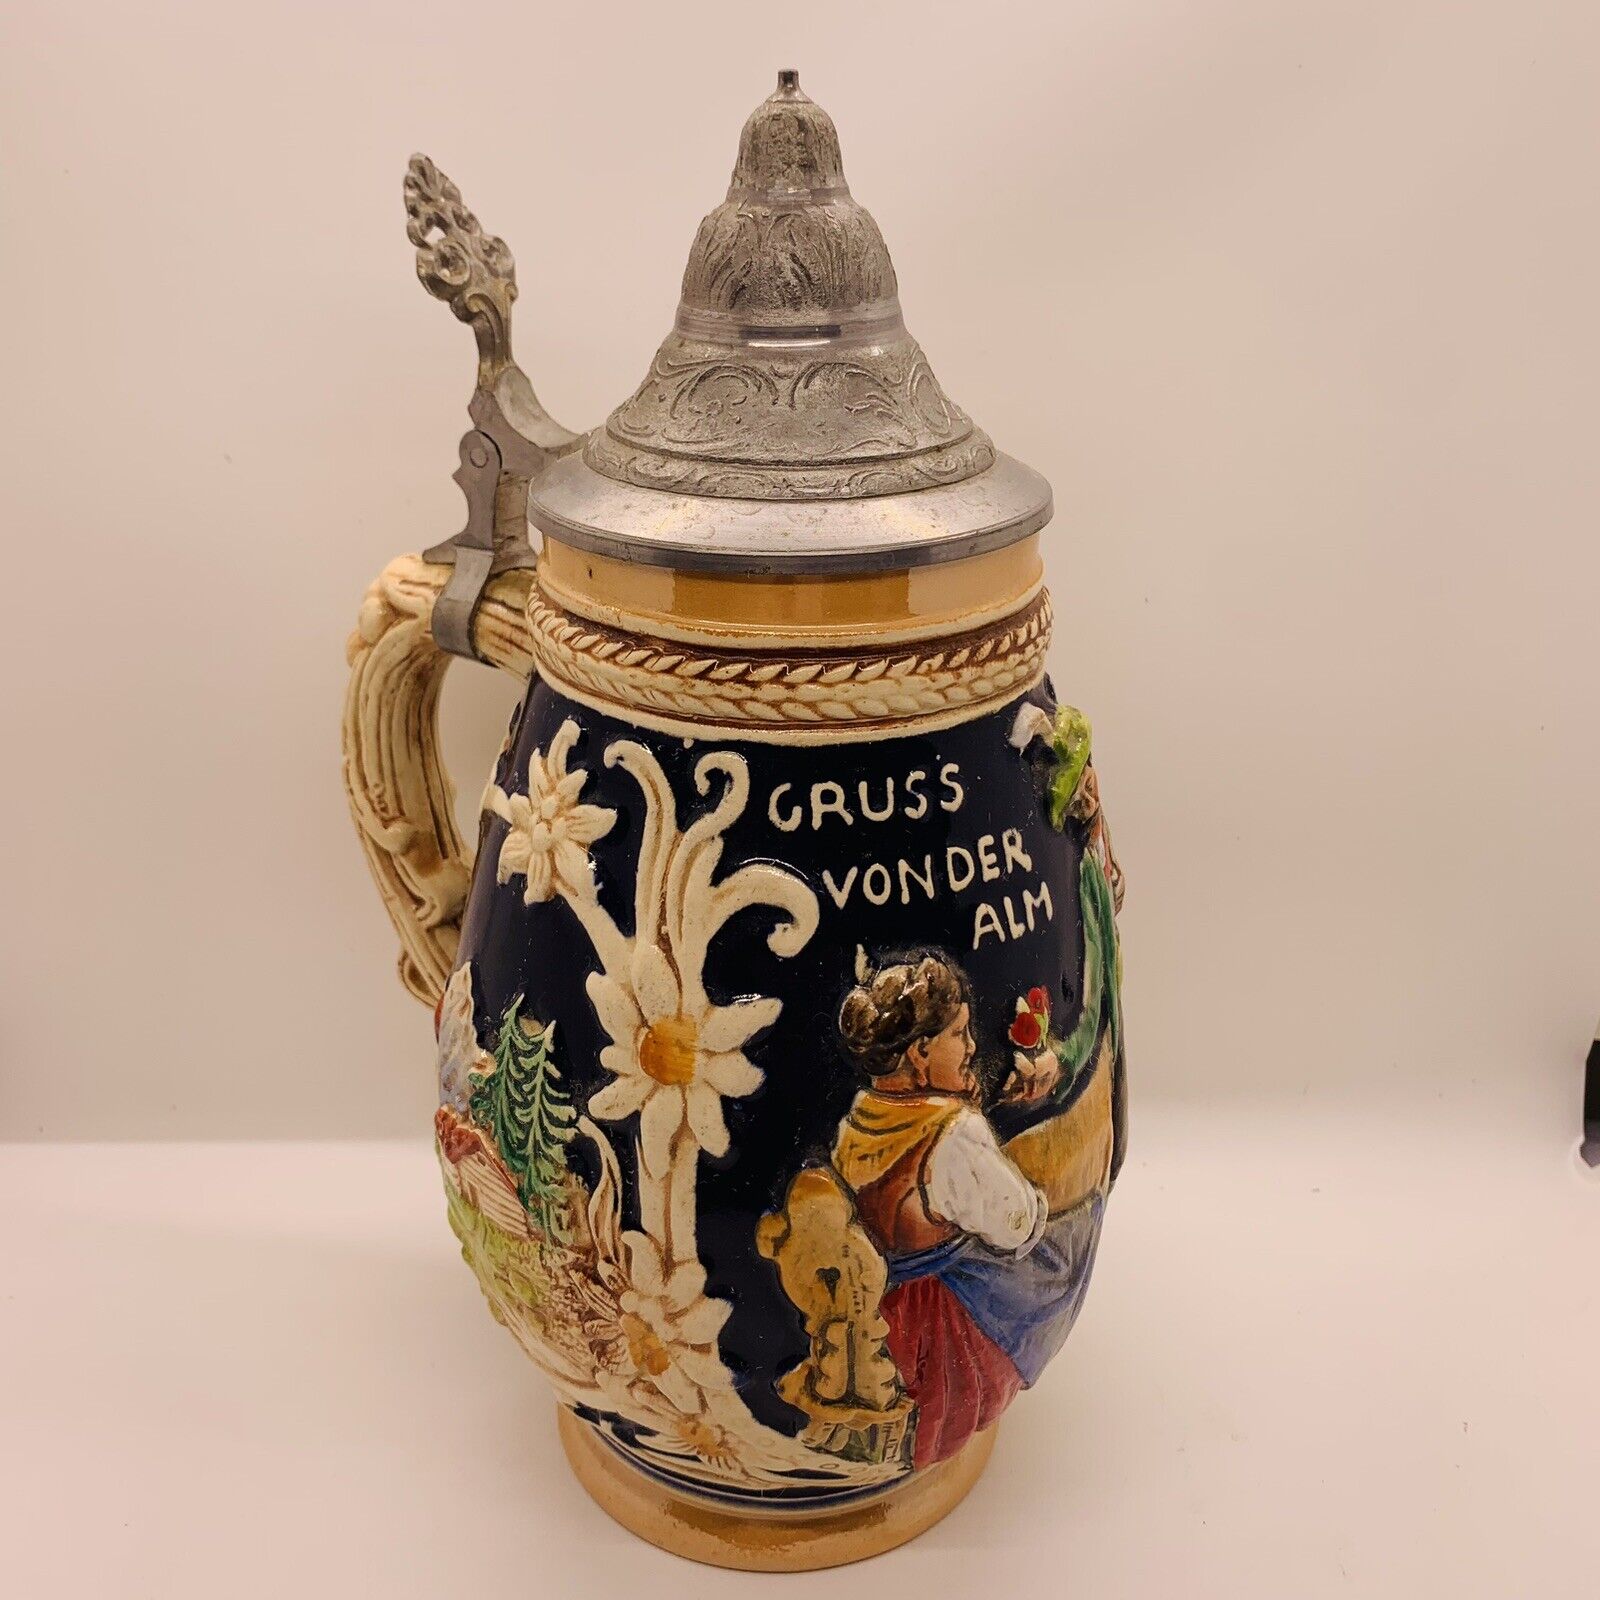 Vintage 1937 “Gruss Vonder Alm” Western Germany Lidded Ceramic Beer Stein